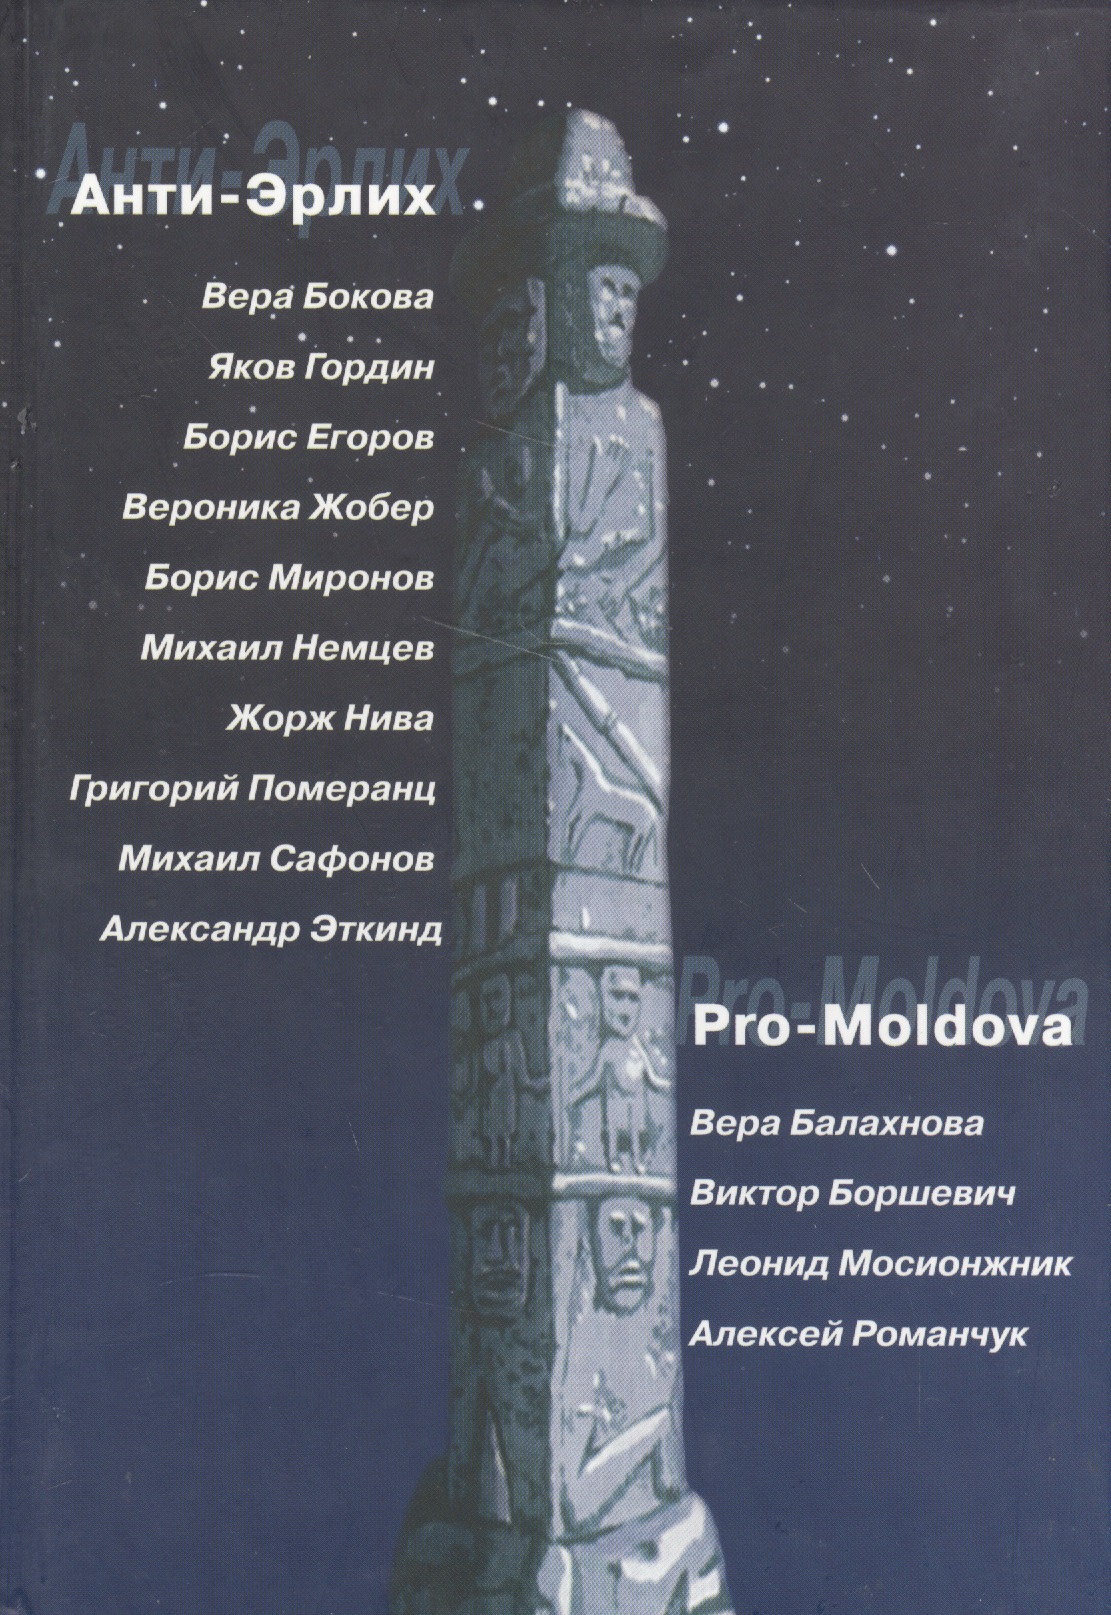 -. Pro-Moldova